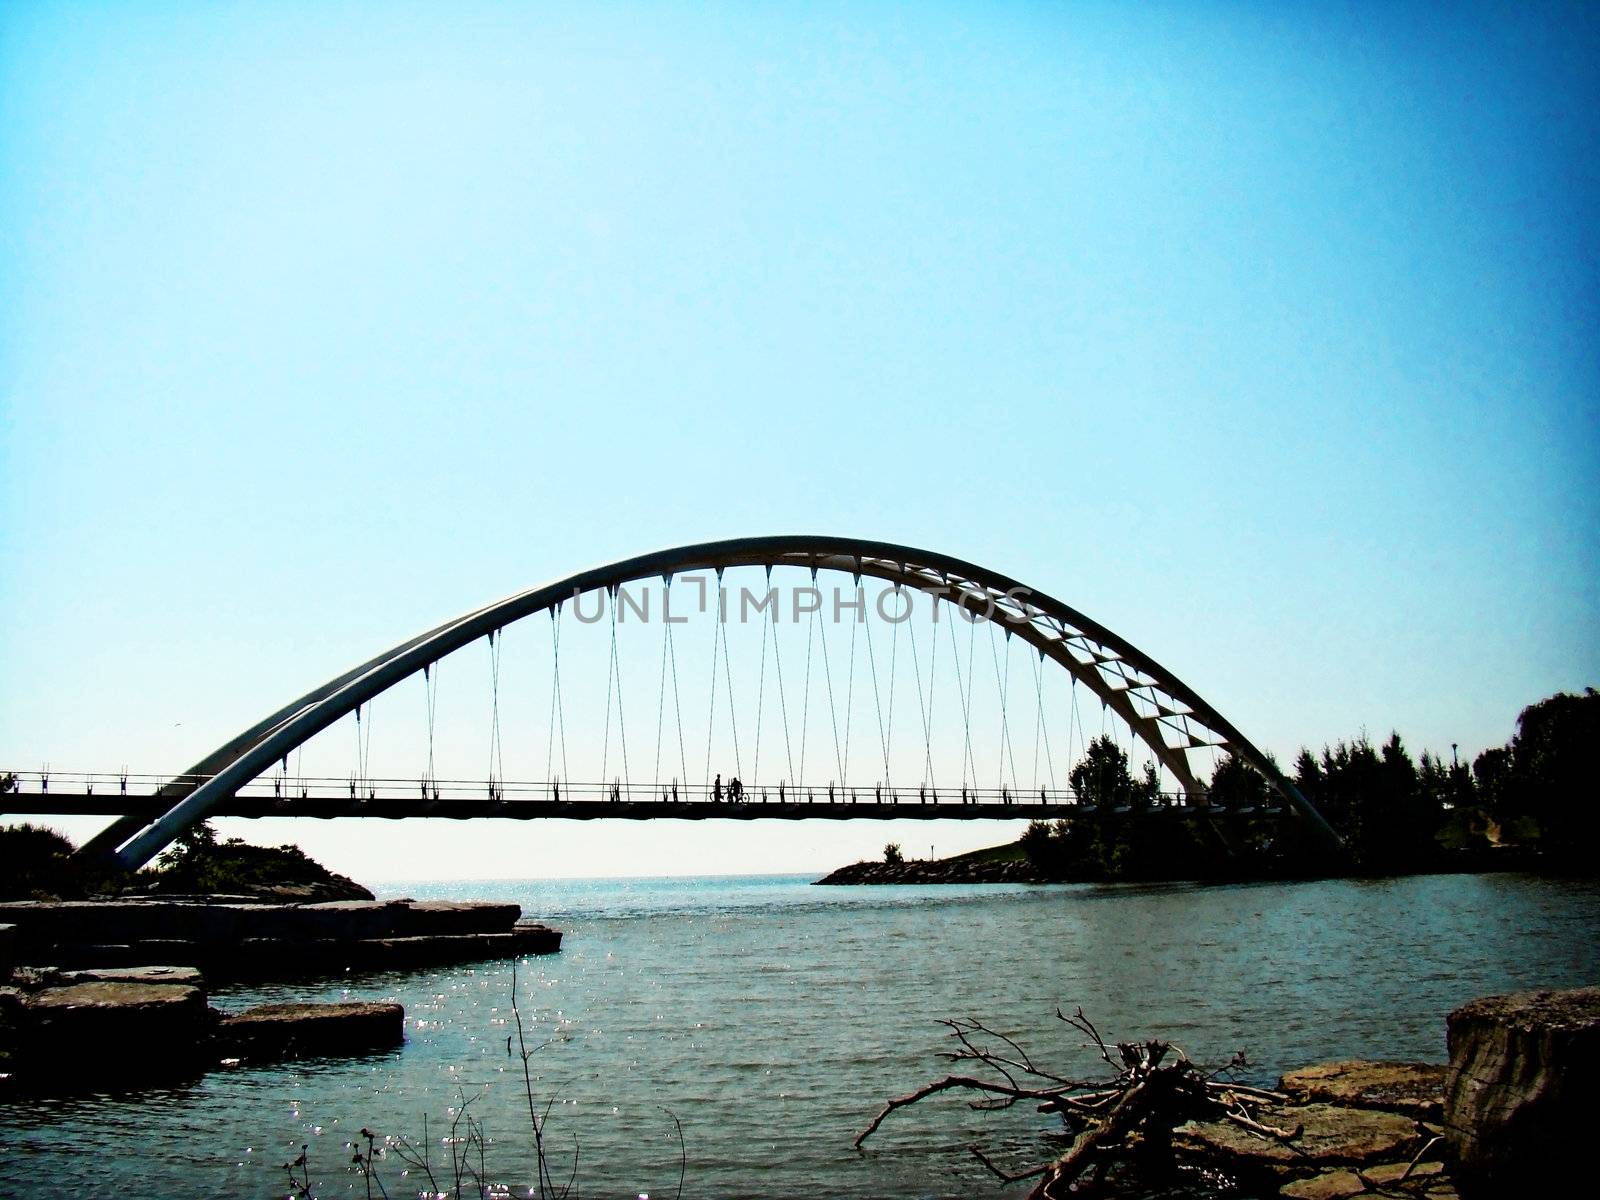 large span pedestrain bridge spans part of Lake Ontario